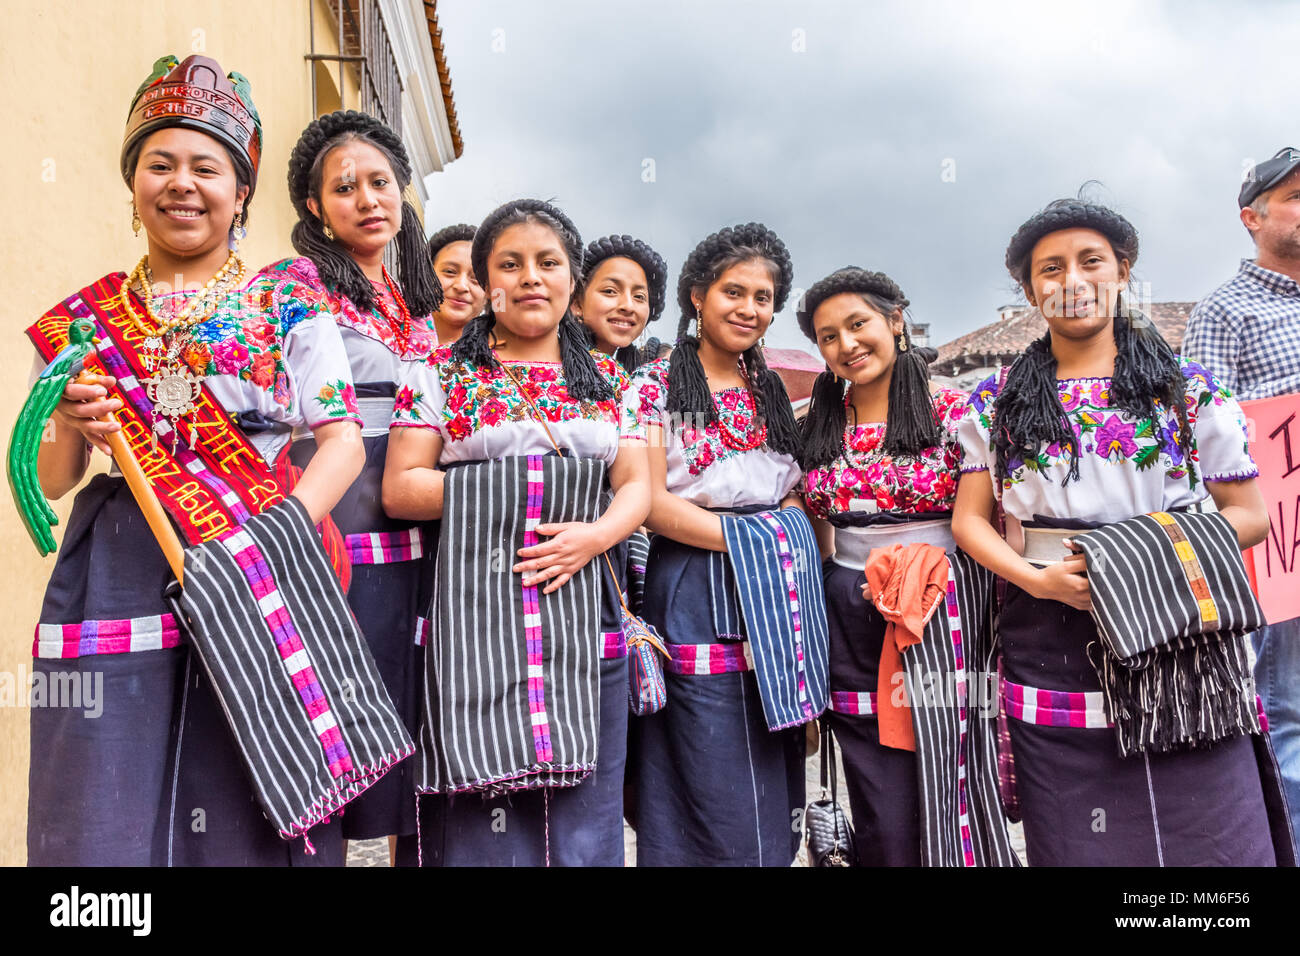 Antigua, Guatemala - janvier 21, 2017 : concours de beauté Maya Quiche de princesses en costume traditionnel dans la rue de site du patrimoine mondial de l'UNESCO Banque D'Images